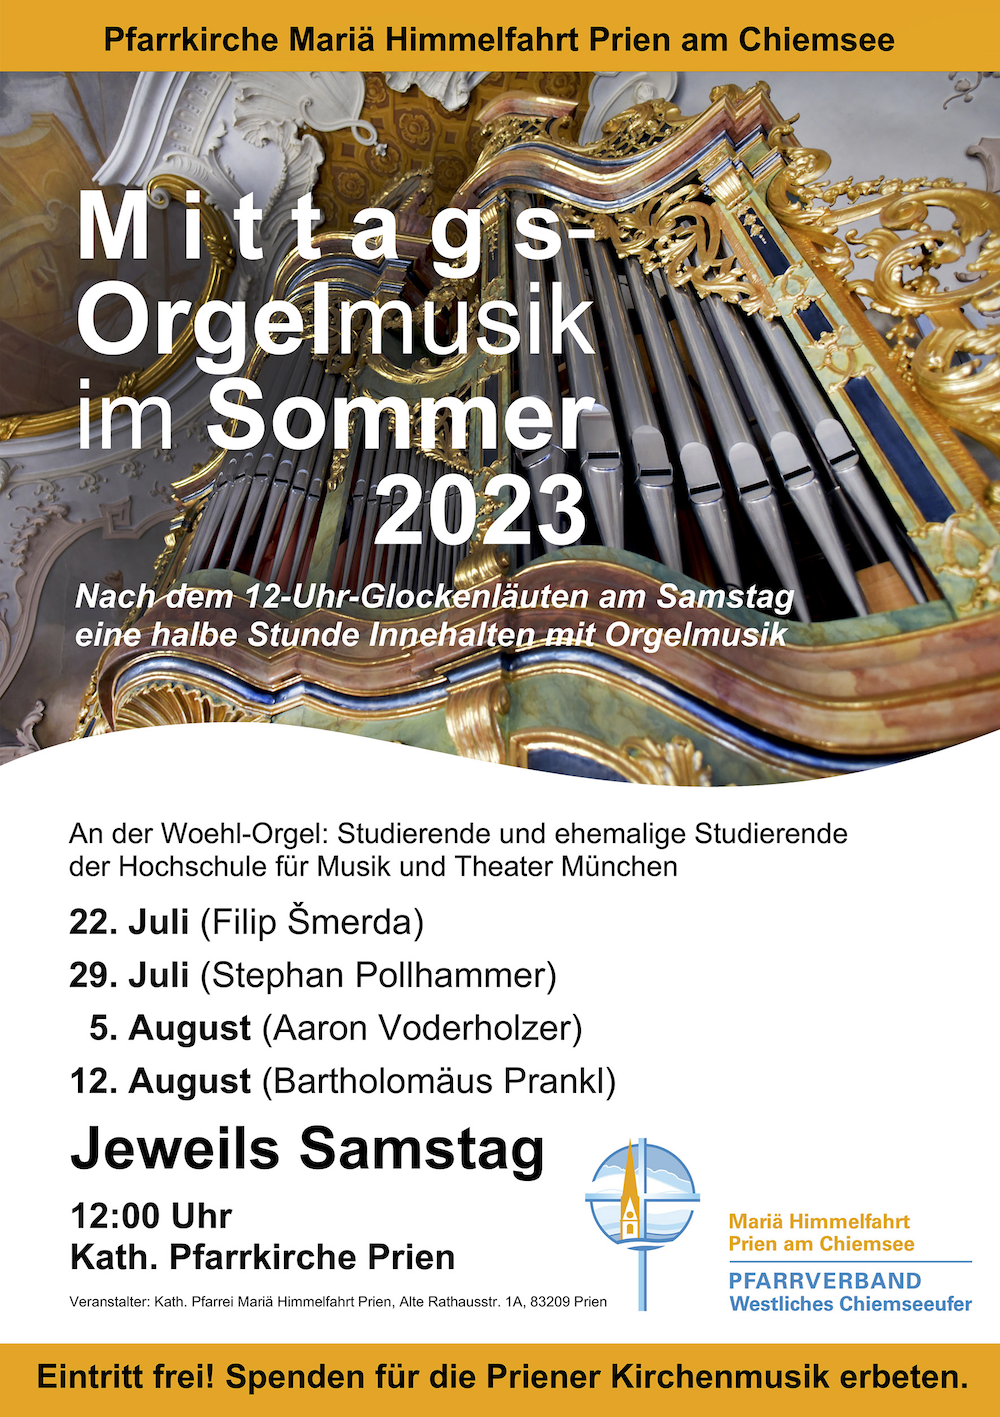 Mittags Orgelmusik im Sommer 2023